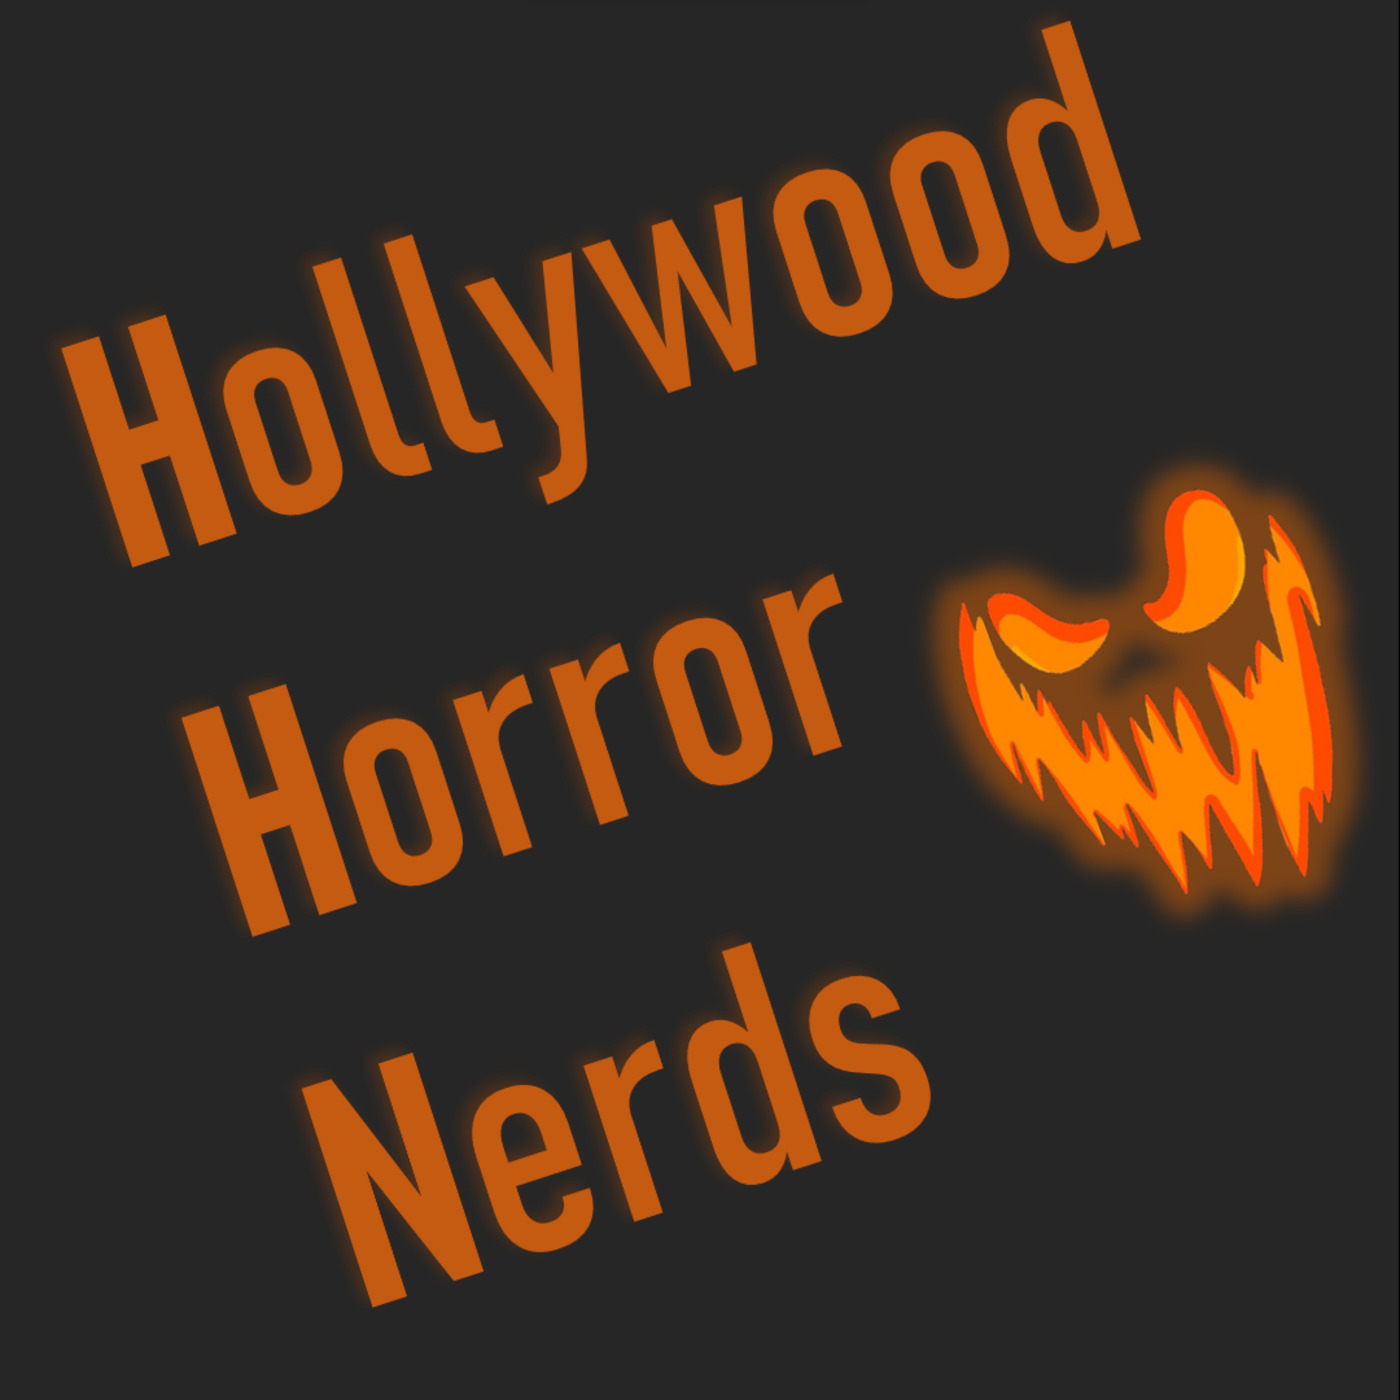 Artwork for Hollywood Horror Nerds